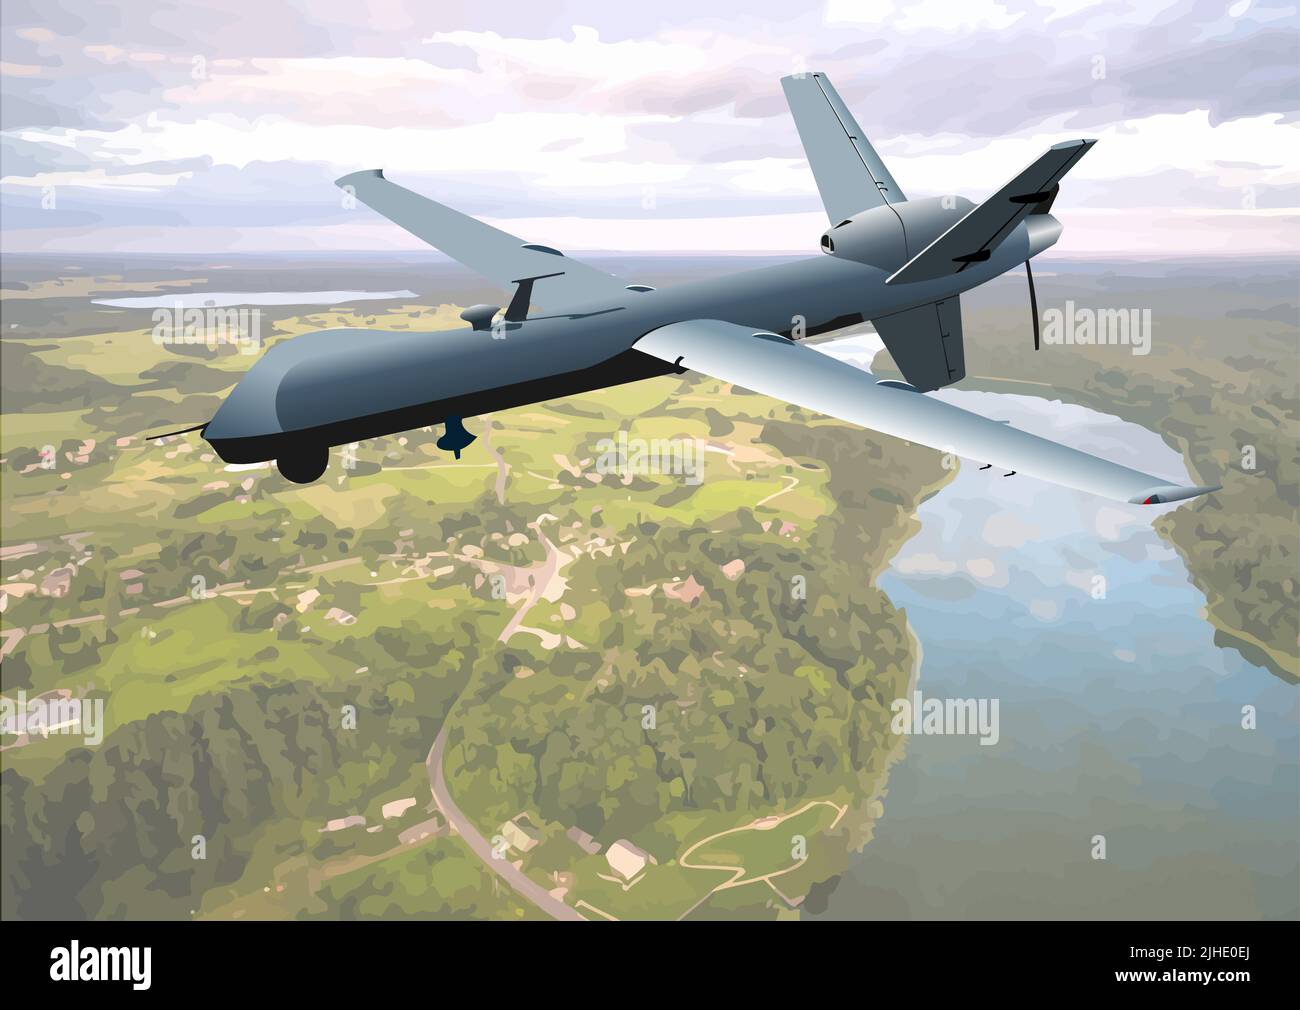 Aereo dei droni immagini e fotografie stock ad alta risoluzione - Alamy